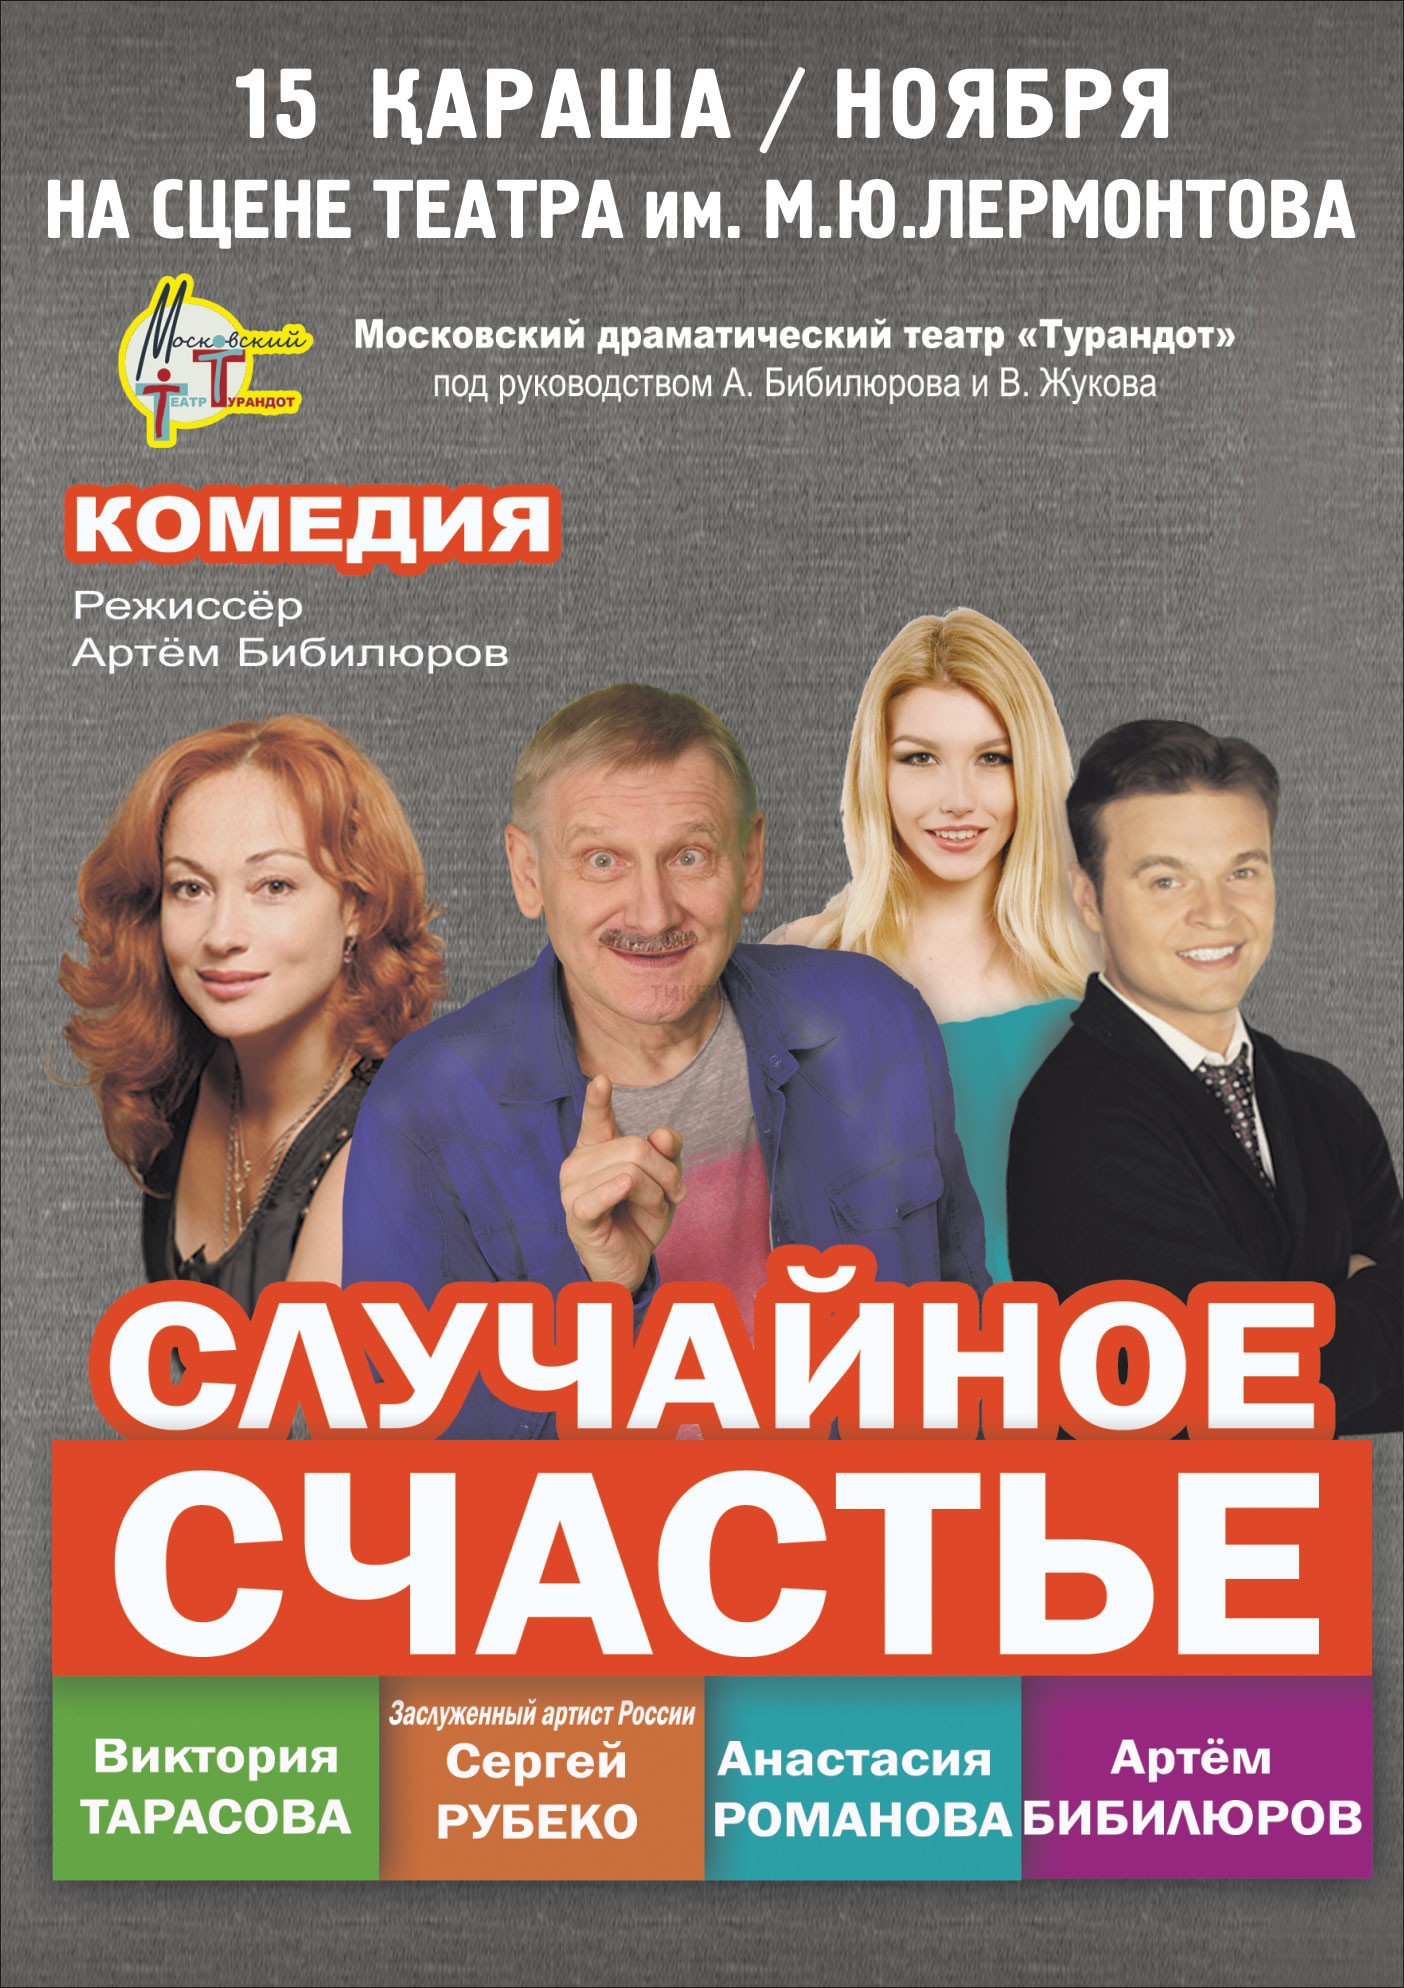 Комедия "Случайное счастье" в Алматы